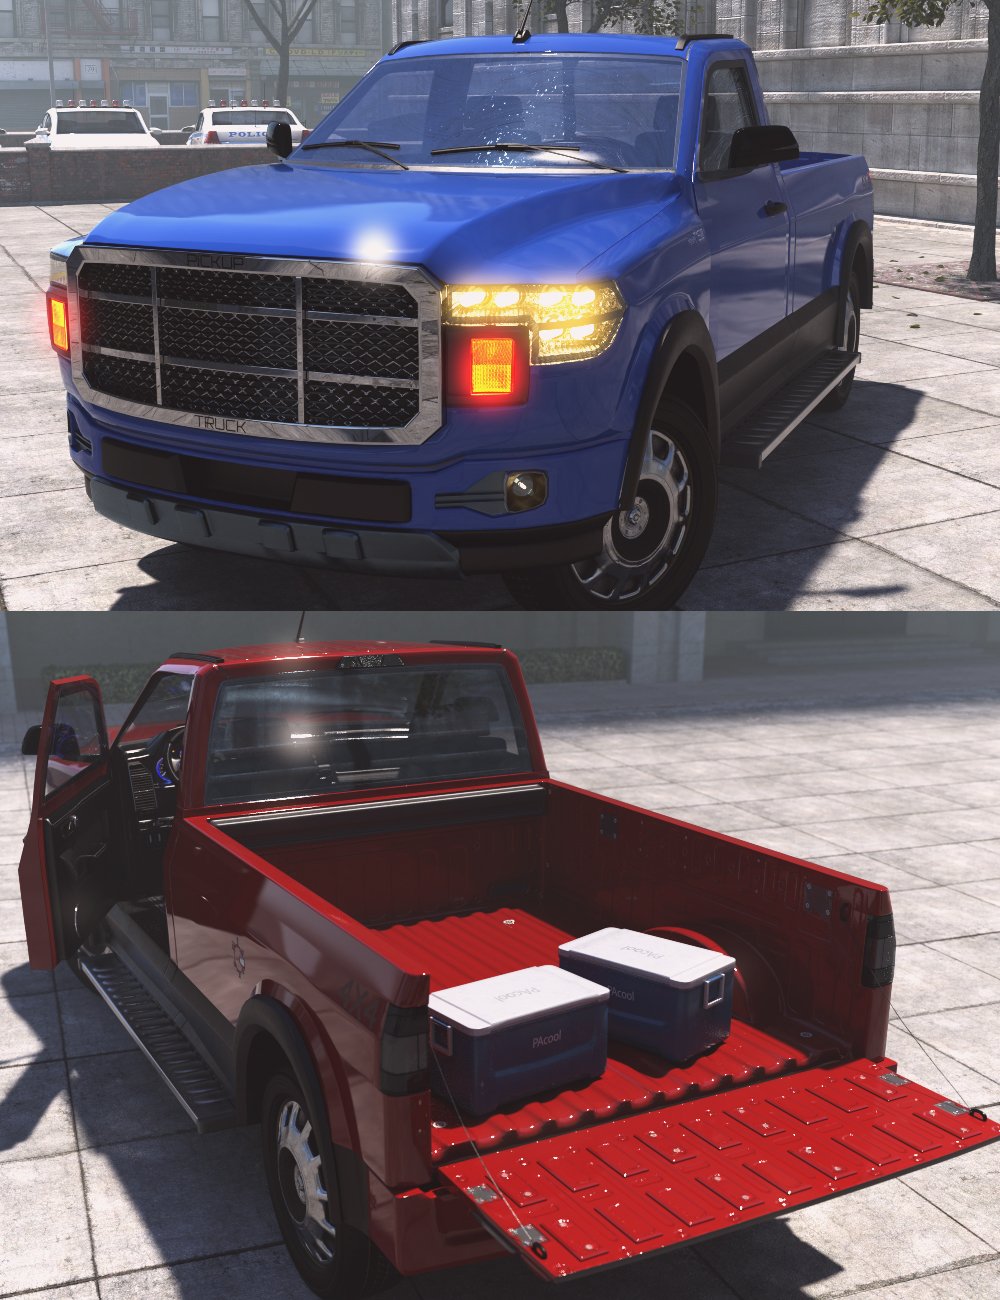 XI American Pickup Truck by: Xivon, 3D Models by Daz 3D